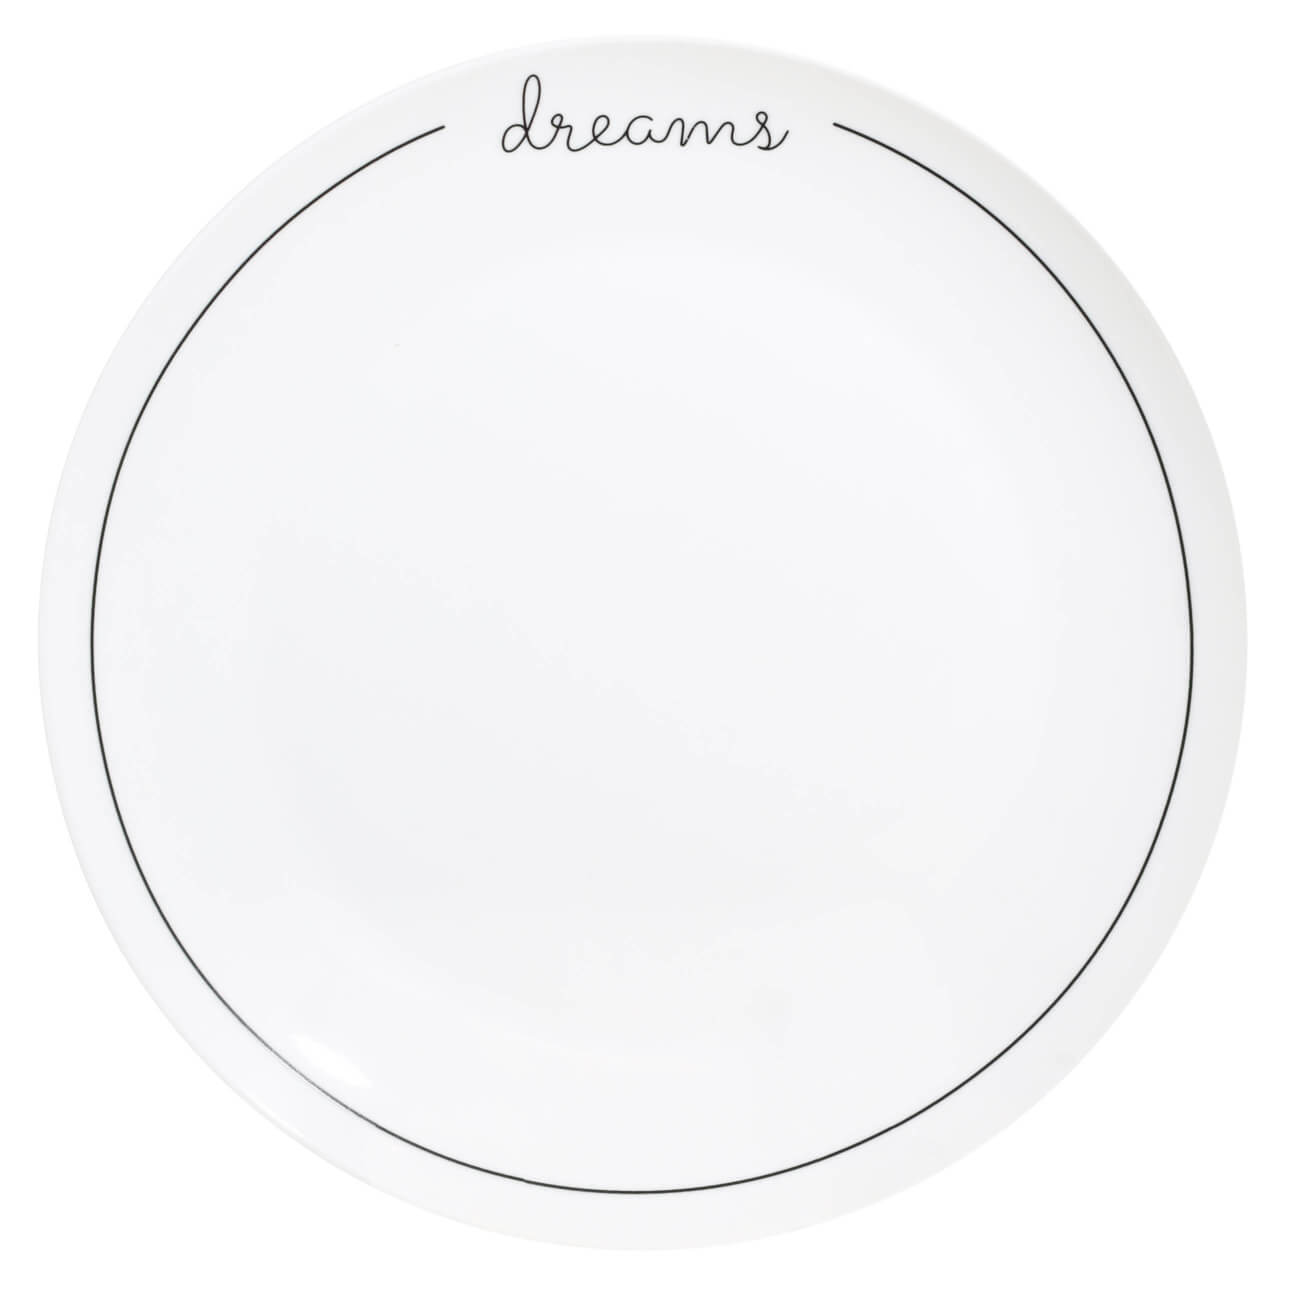 Тарелка обеденная, 27 см, фарфор N, белая, Dreams, Scroll white тарелка обеденная фарфор 27х25 см овальная fusion bronco 263 1000 брусничная